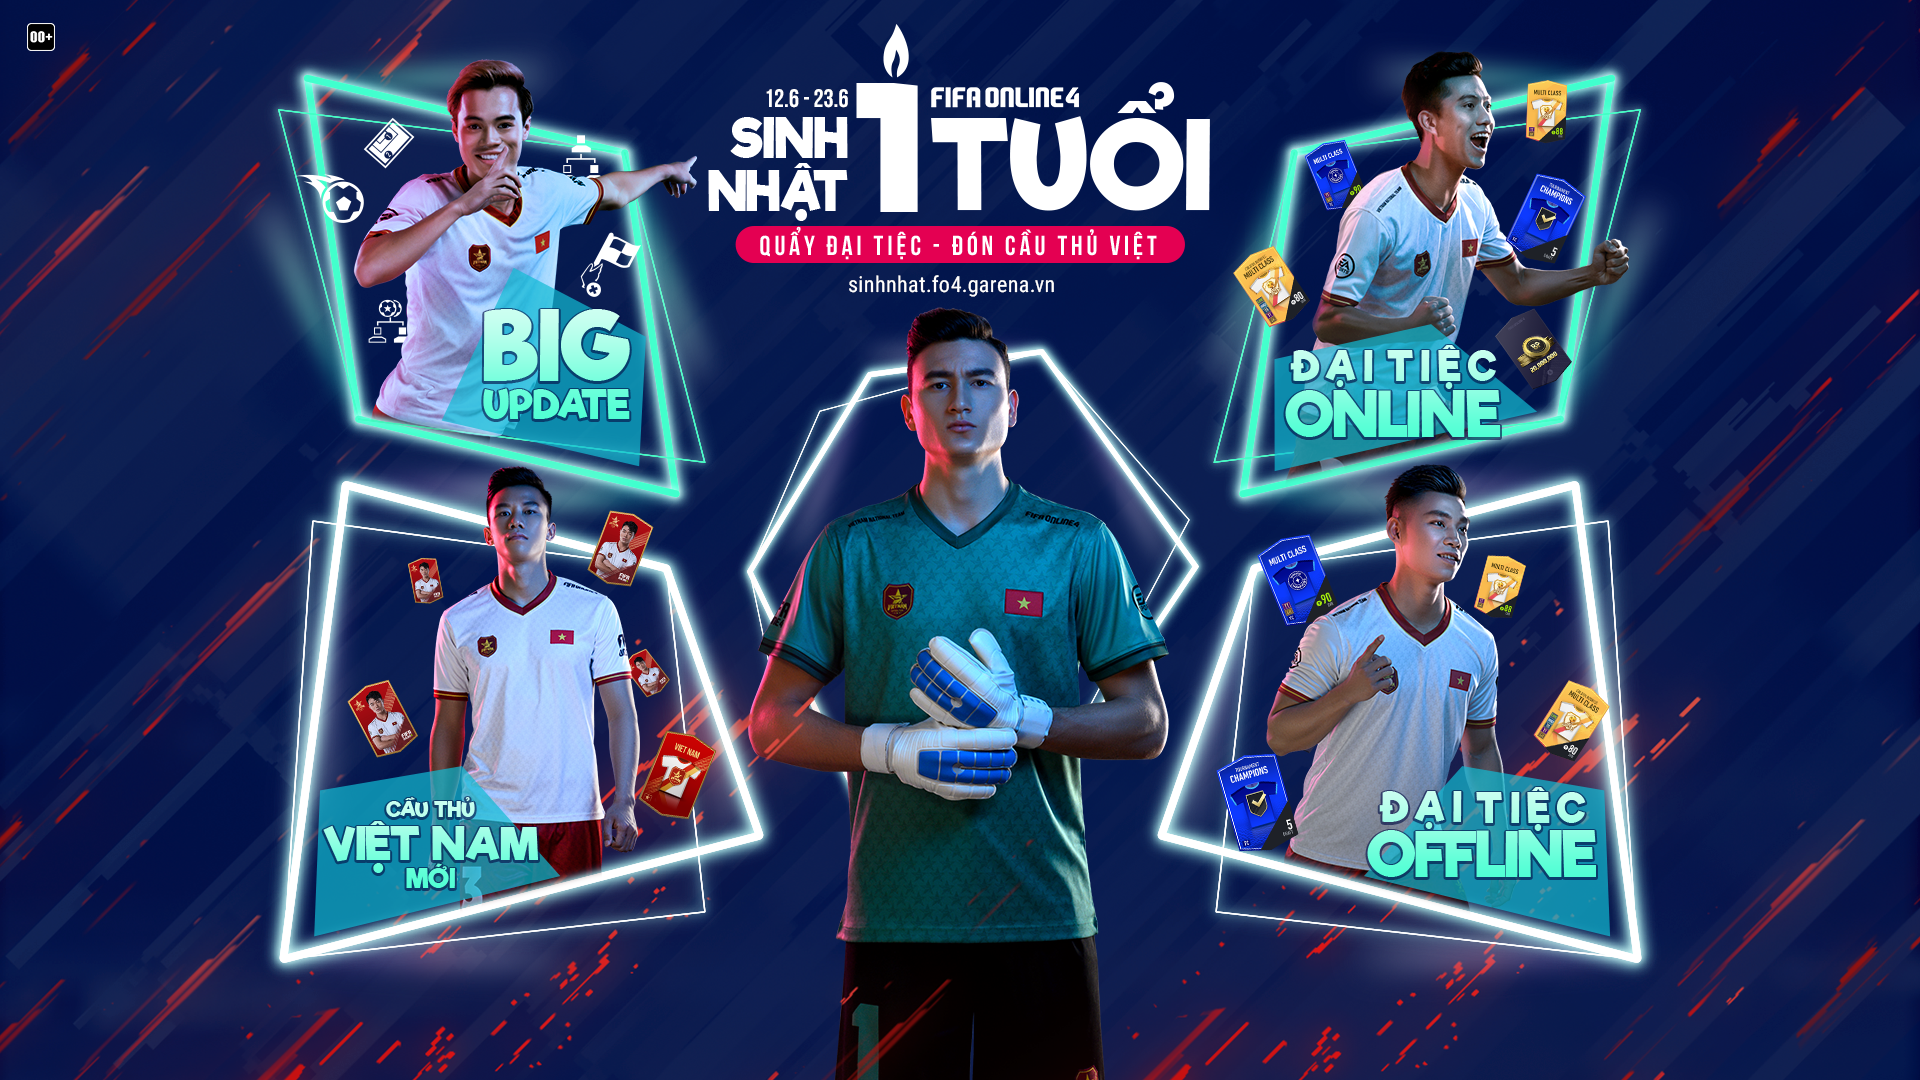 FIFA Online 4 Việt Nam  SHARE DẤU ẤN  QUẨY SINH NHẬT  QUÀ BẤT TẬN TẠI SINH  NHẬT 2 TUỔI FIFA ONLINE 4 CƠ HỘI RINH QUÀ SIÊU KHỦNG VÀ